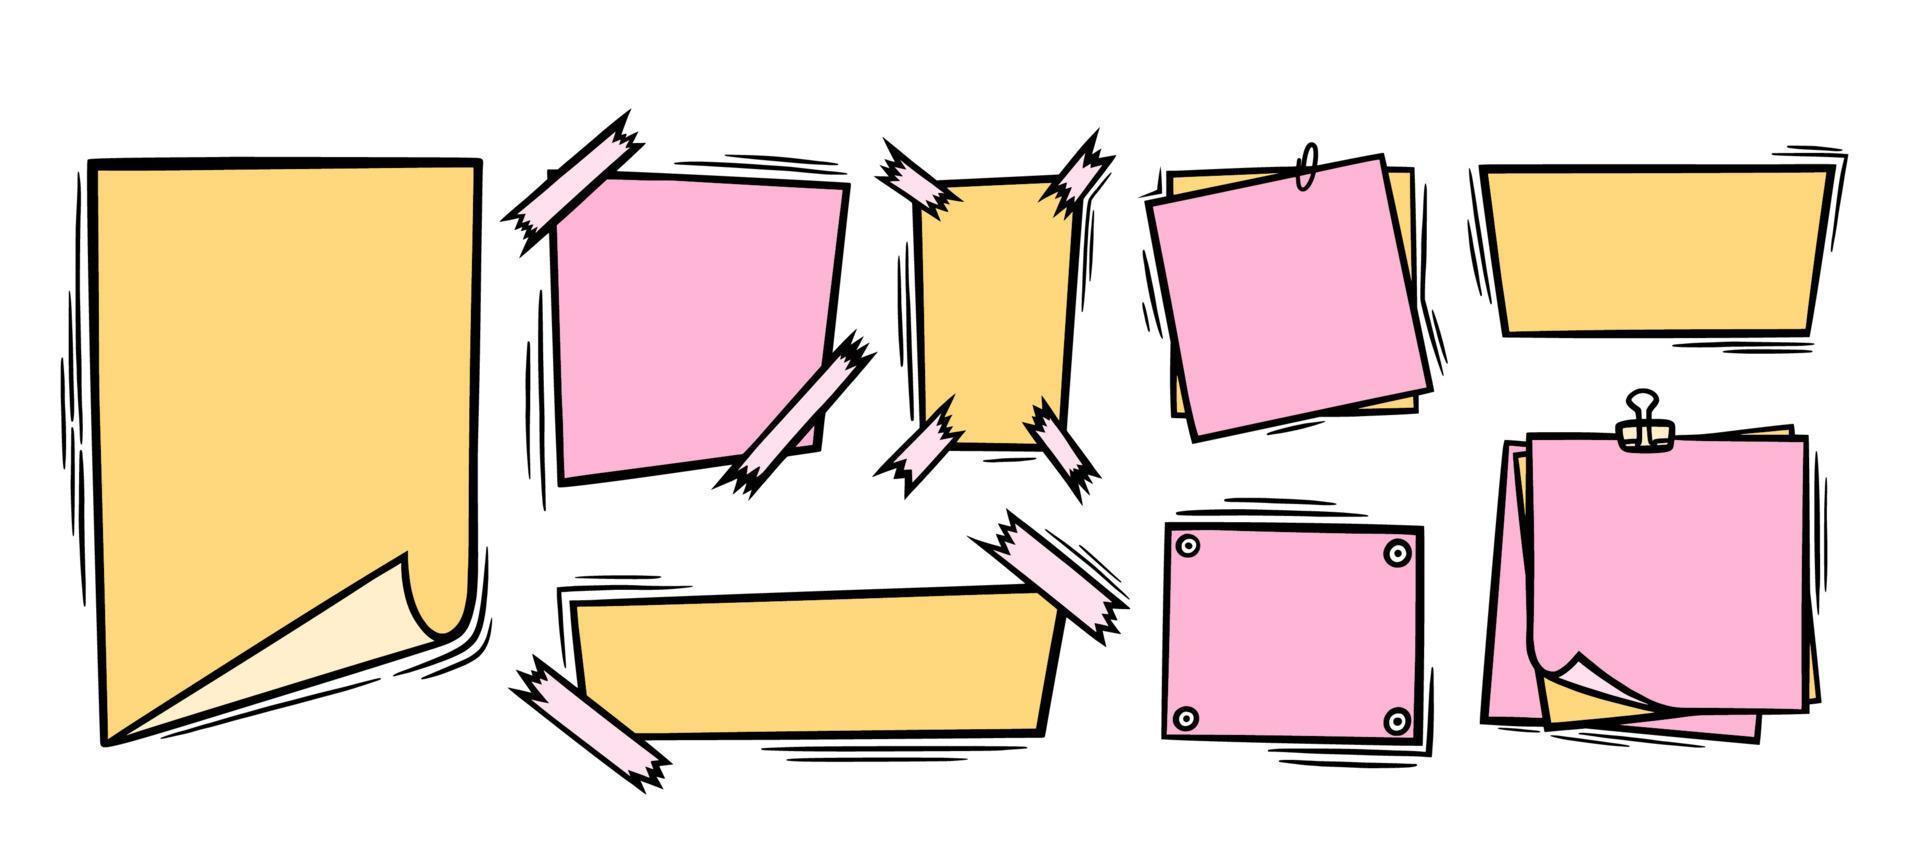 doodle folhas de papel com clipe, fita adesiva e alfinetes. páginas de papel em branco rosa e amarelo para memorandos e mensagens. ilustração em vetor doodle colorido